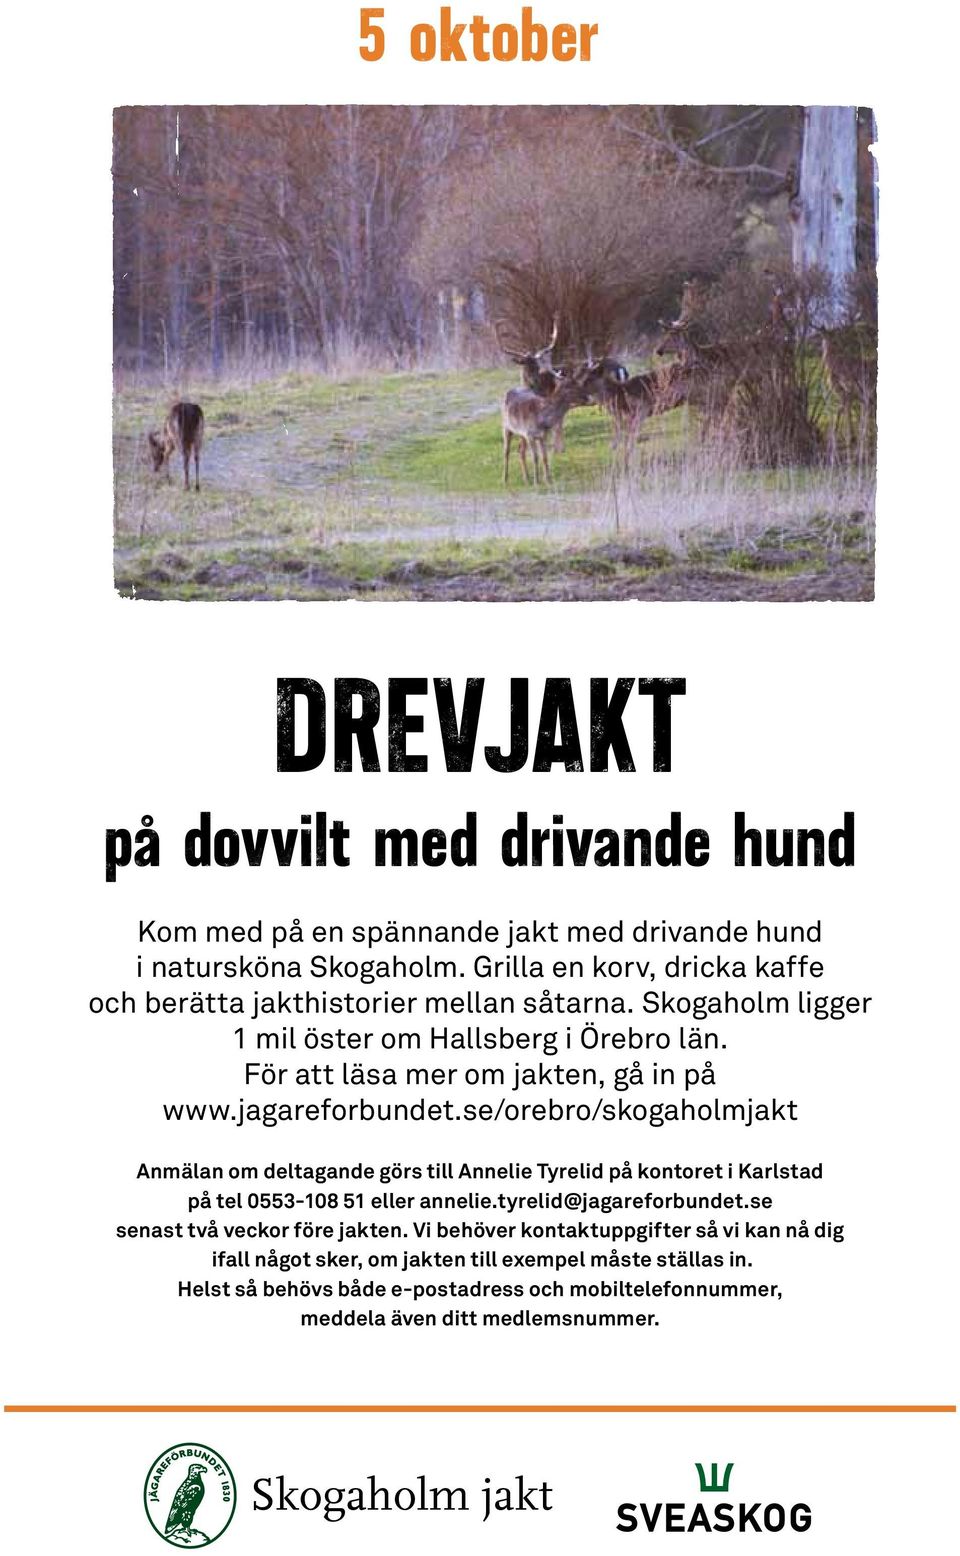 jagareforbundet.se/orebro/skogaholmjakt Anmälan om deltagande görs till Annelie Tyrelid på kontoret i Karlstad på tel 0553-108 51 eller annelie.tyrelid@jagareforbundet.